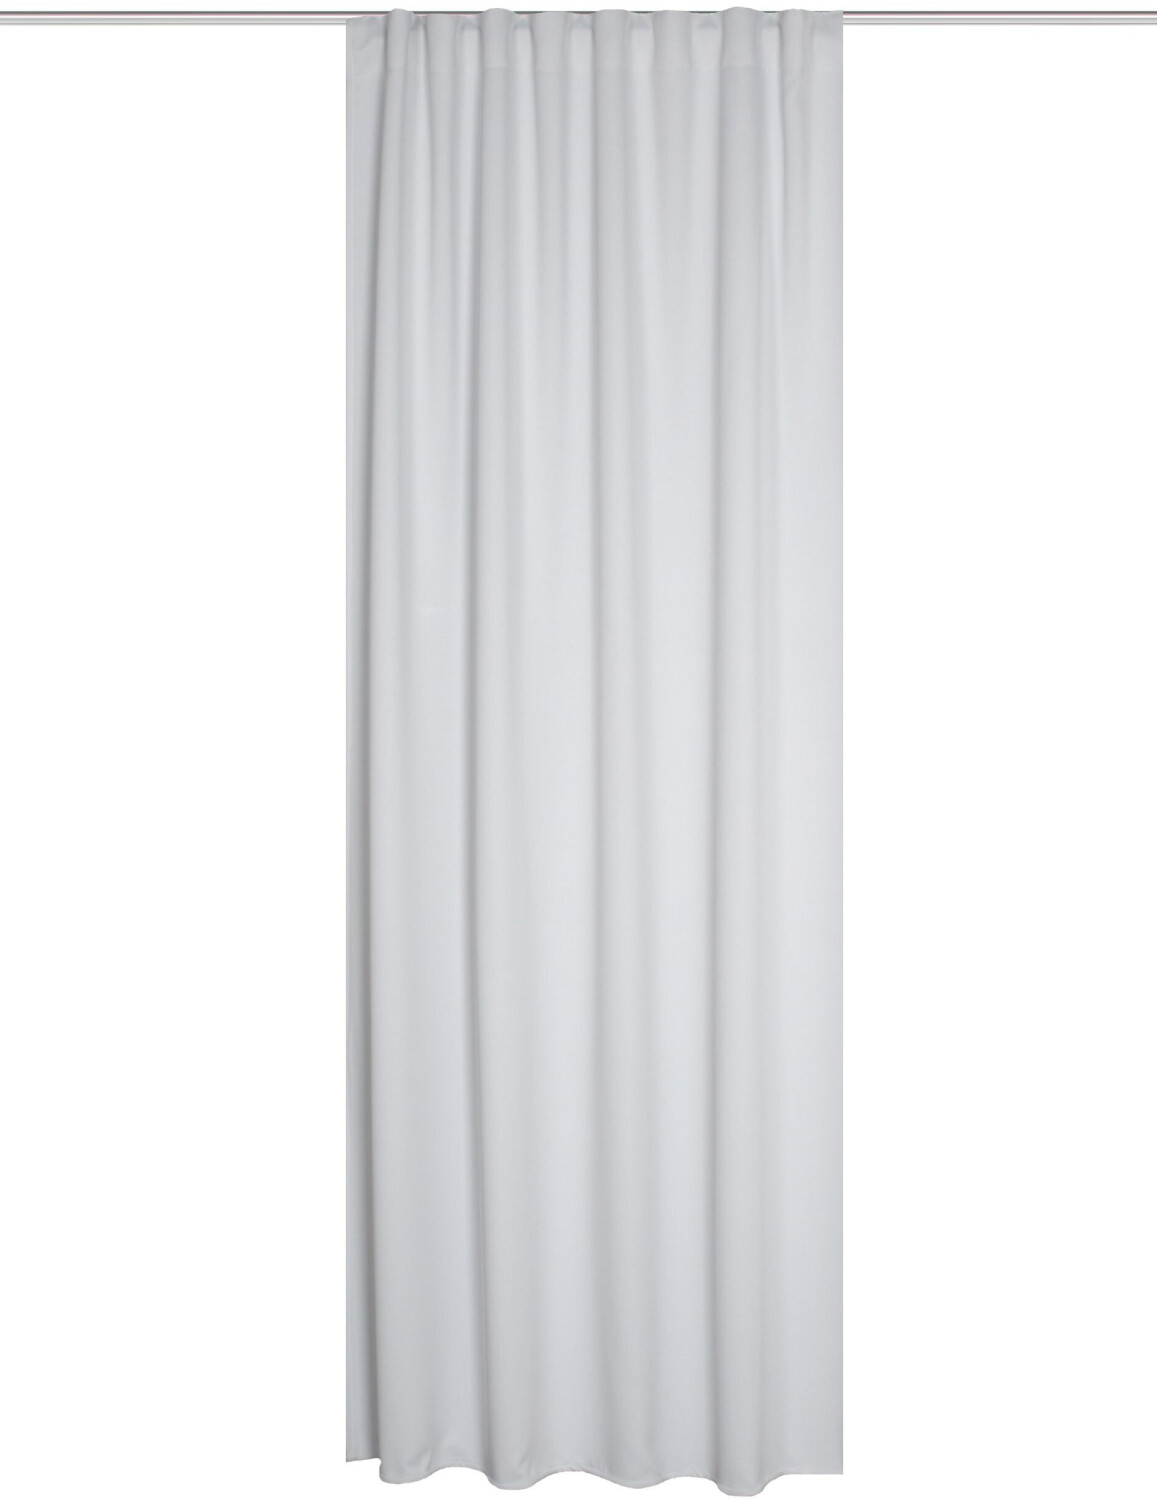 Home Fashion Vorhang mit Universalband Blacky dunkelblau 135 x 245 cm  schwer entflammbar ab 34,95 € | Preisvergleich bei